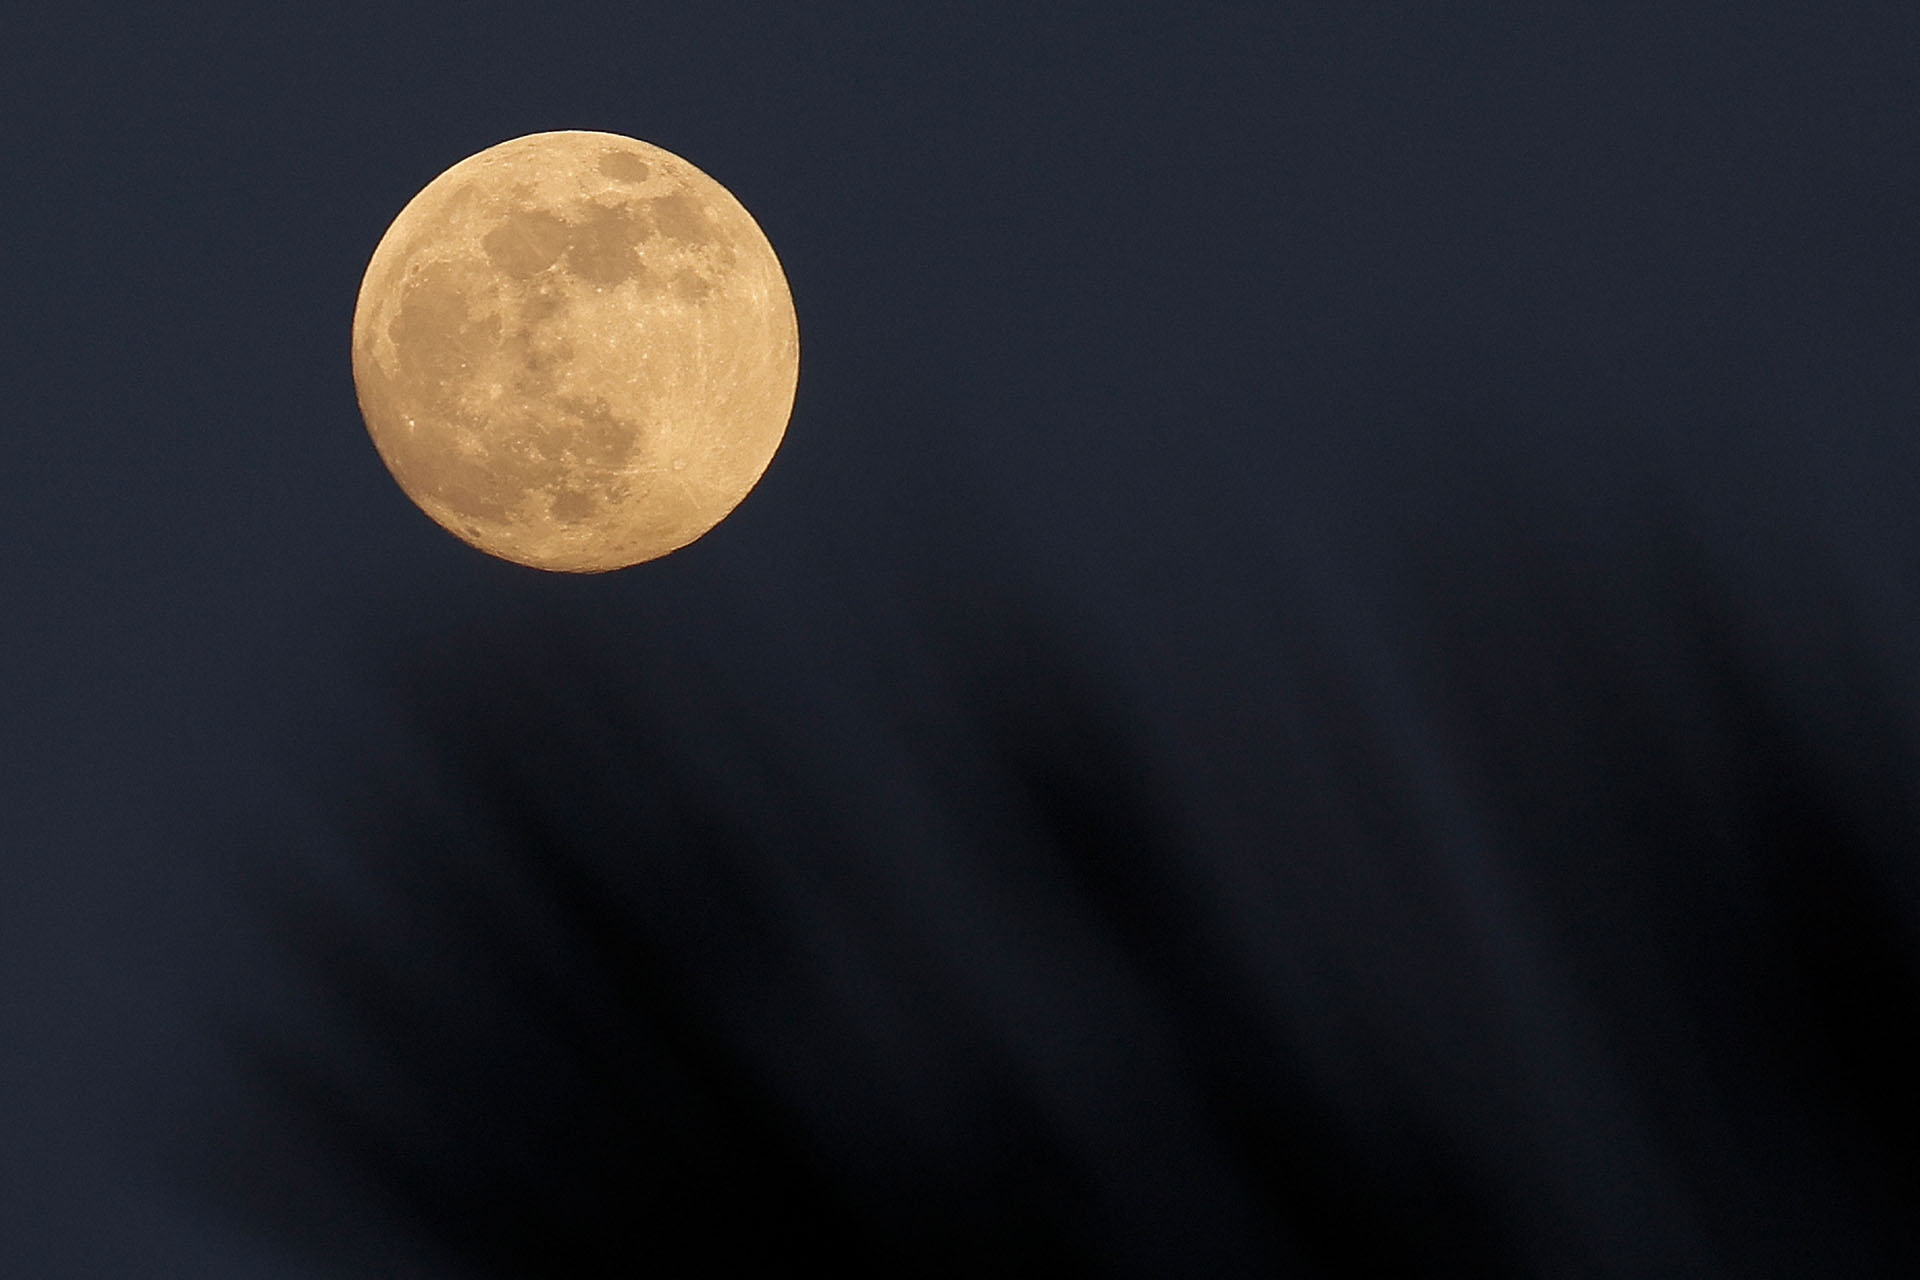 Superluna no es un término astronómico oficial, pero generalmente se usa para describir una Luna llena que se encuentra dentro de al menos el 90 por ciento del perigeo (David GANNON / AFP)